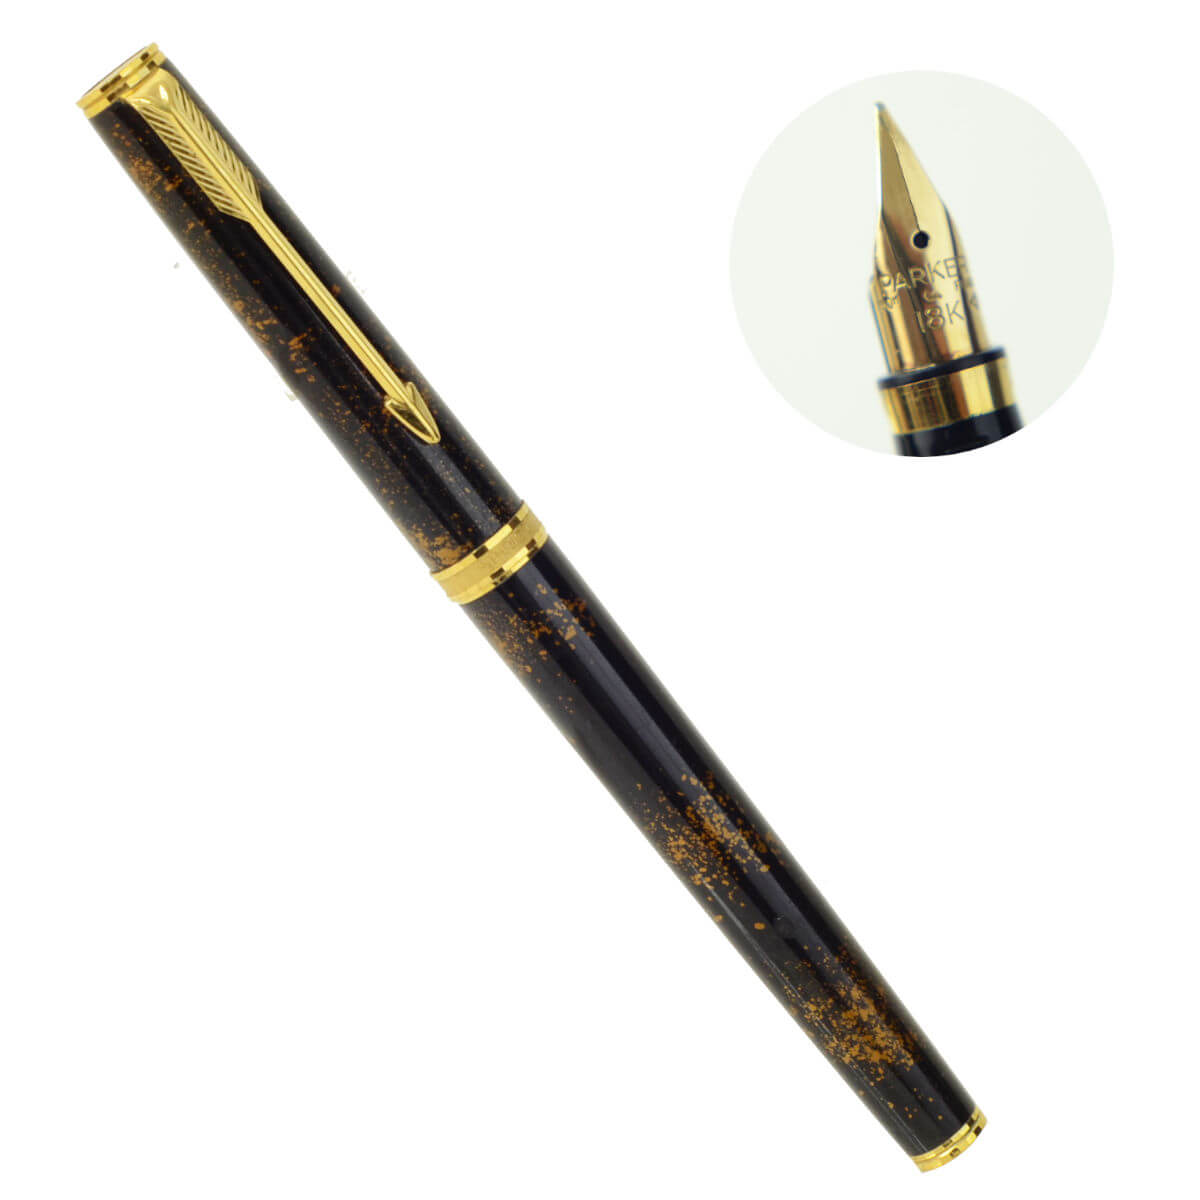 Vintage parker 75 premier china lacque brown golden fountain pen with 18K M nib – Mint